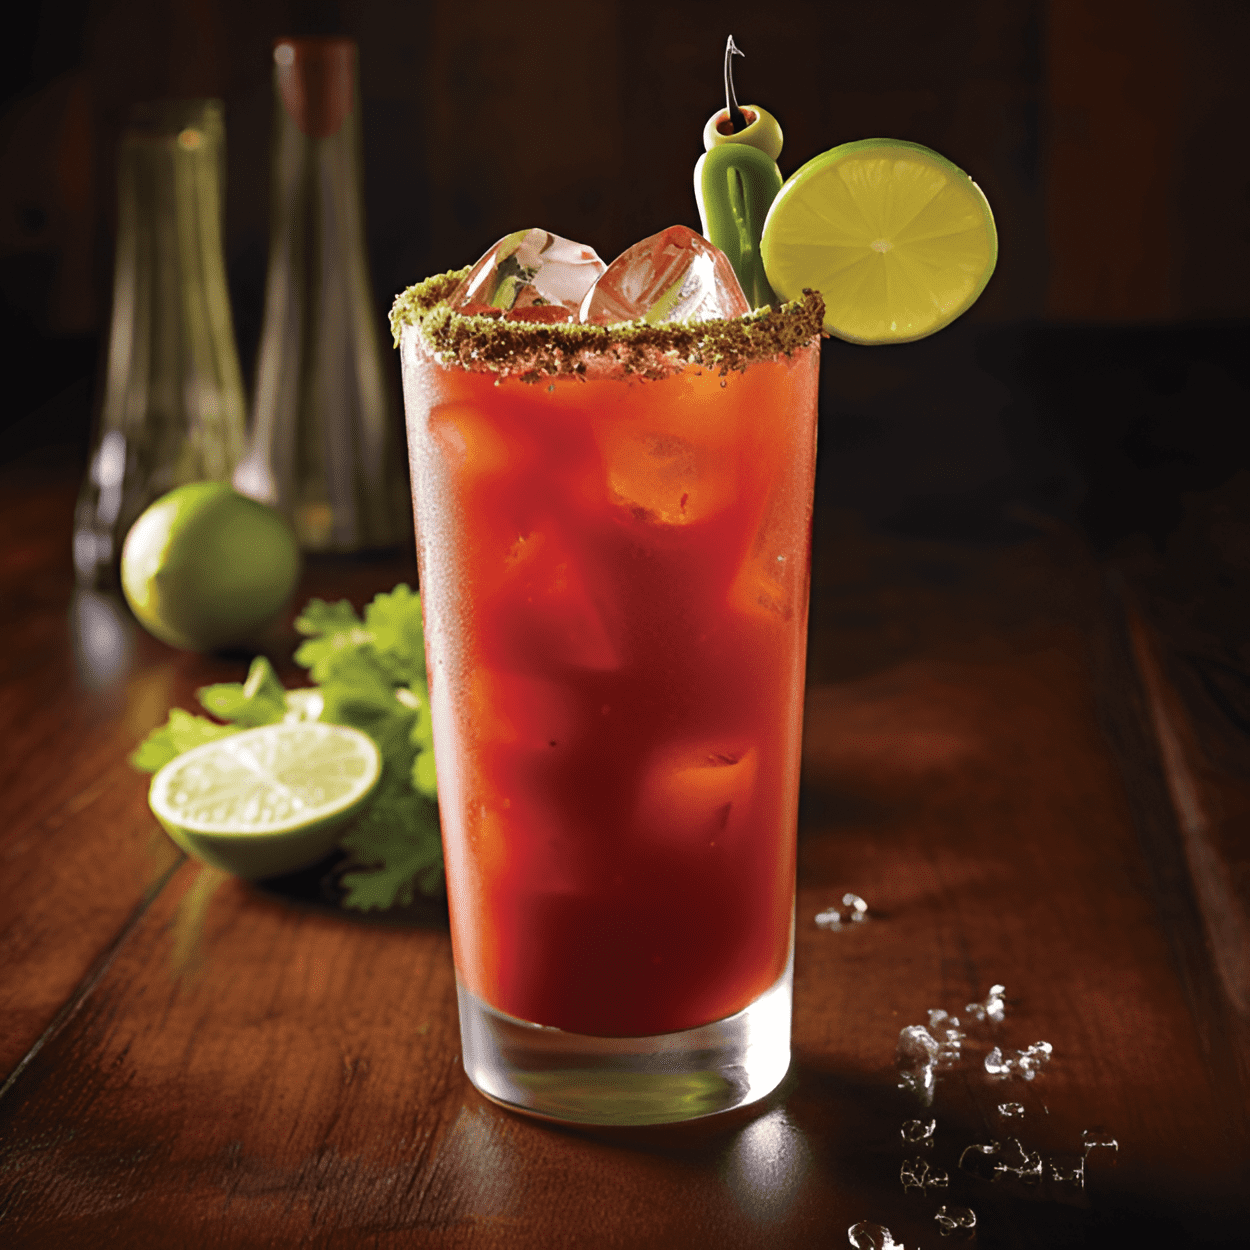 Bloody Caesar Cóctel Receta - El Bloody Caesar es un cóctel sabroso, picante y ligeramente picante. La combinación de jugo de Clamato, vodka y salsa picante crea un perfil de sabor audaz y robusto que es refrescante y satisfactorio.